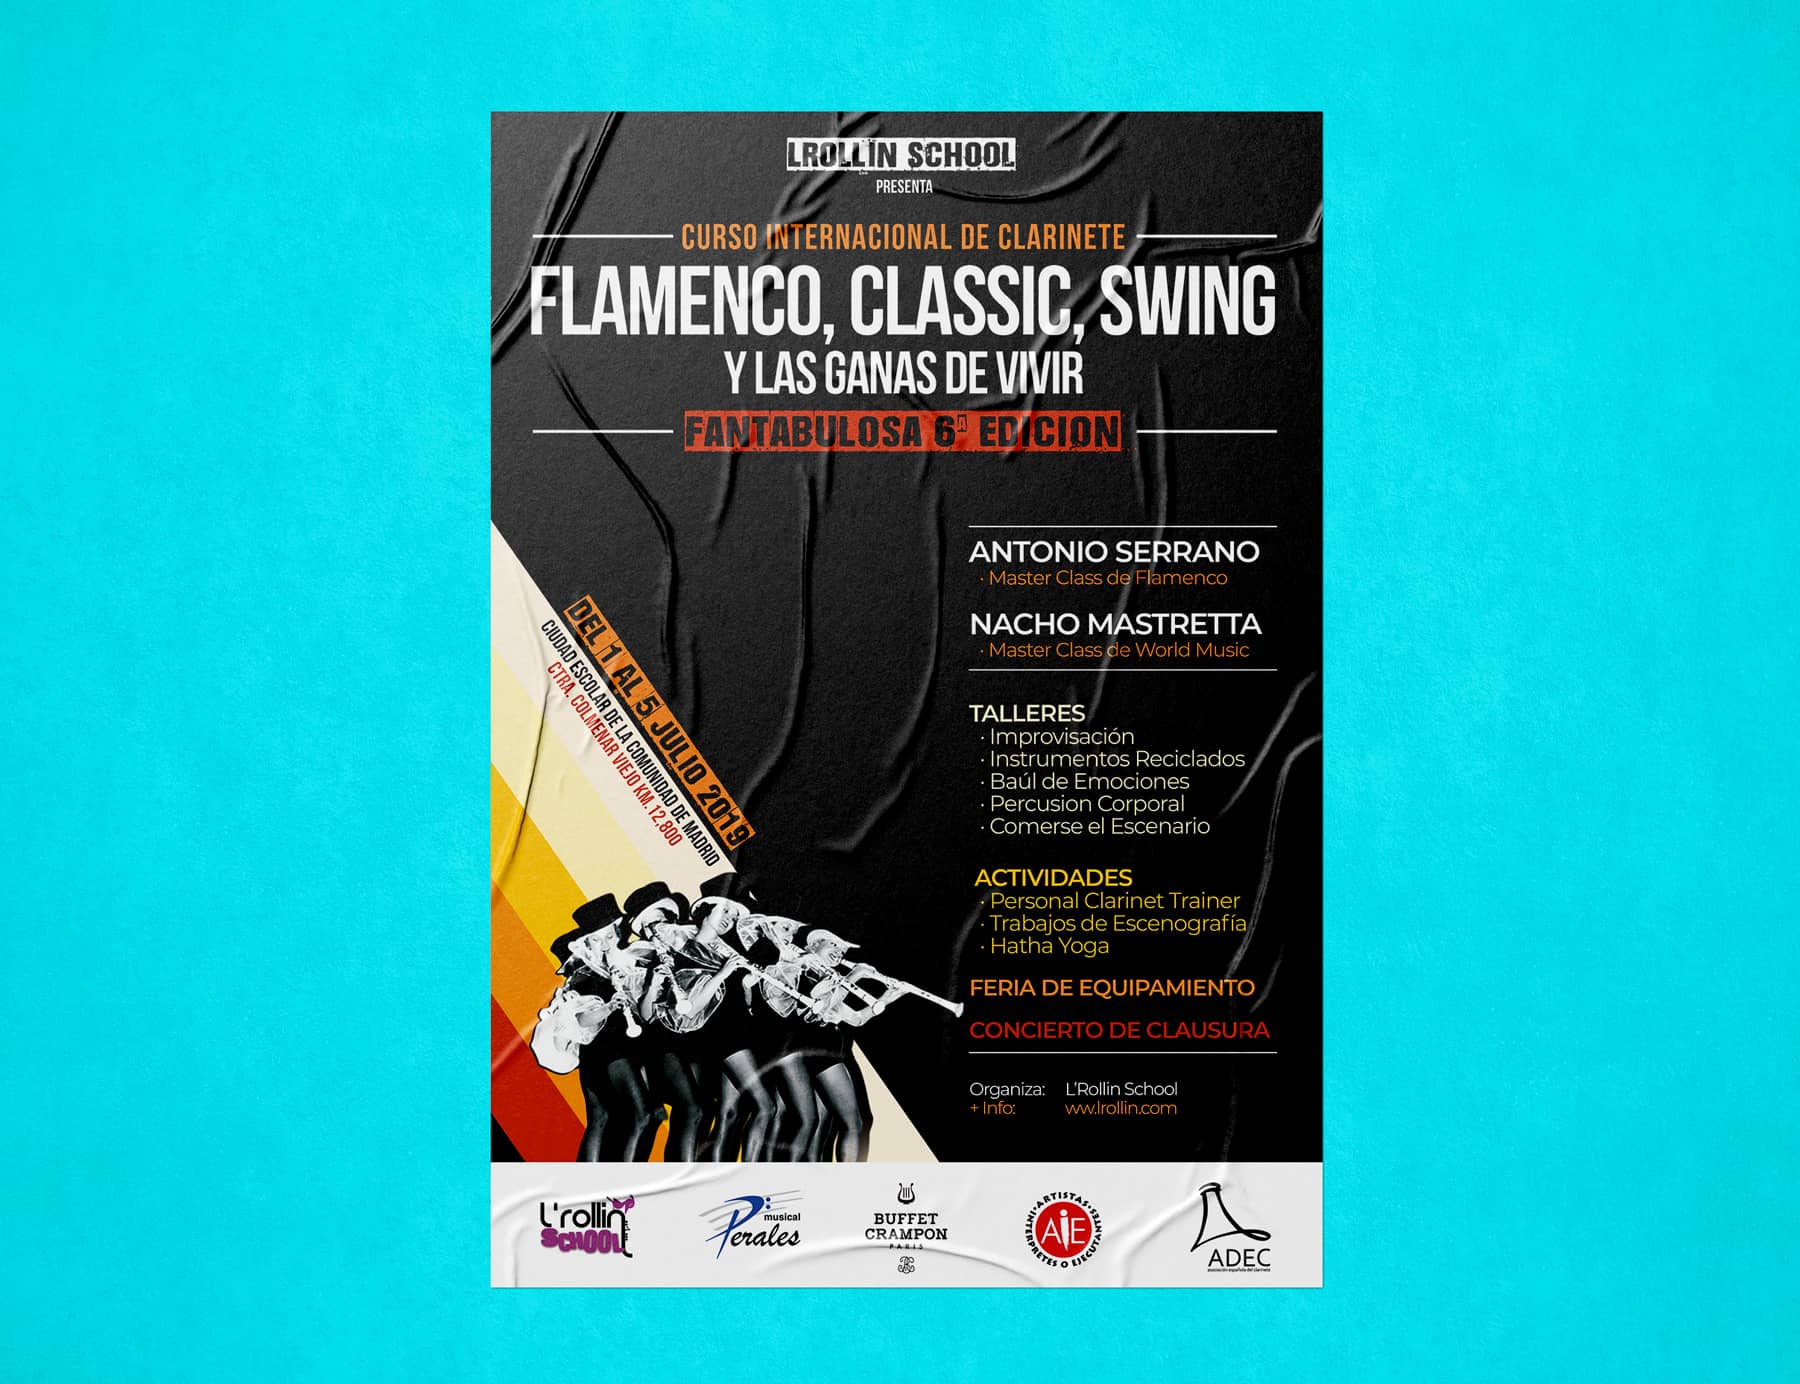 Diseño poster para evento Flamenco Classic Swing y las ganas de vivir branding por The Acctitude